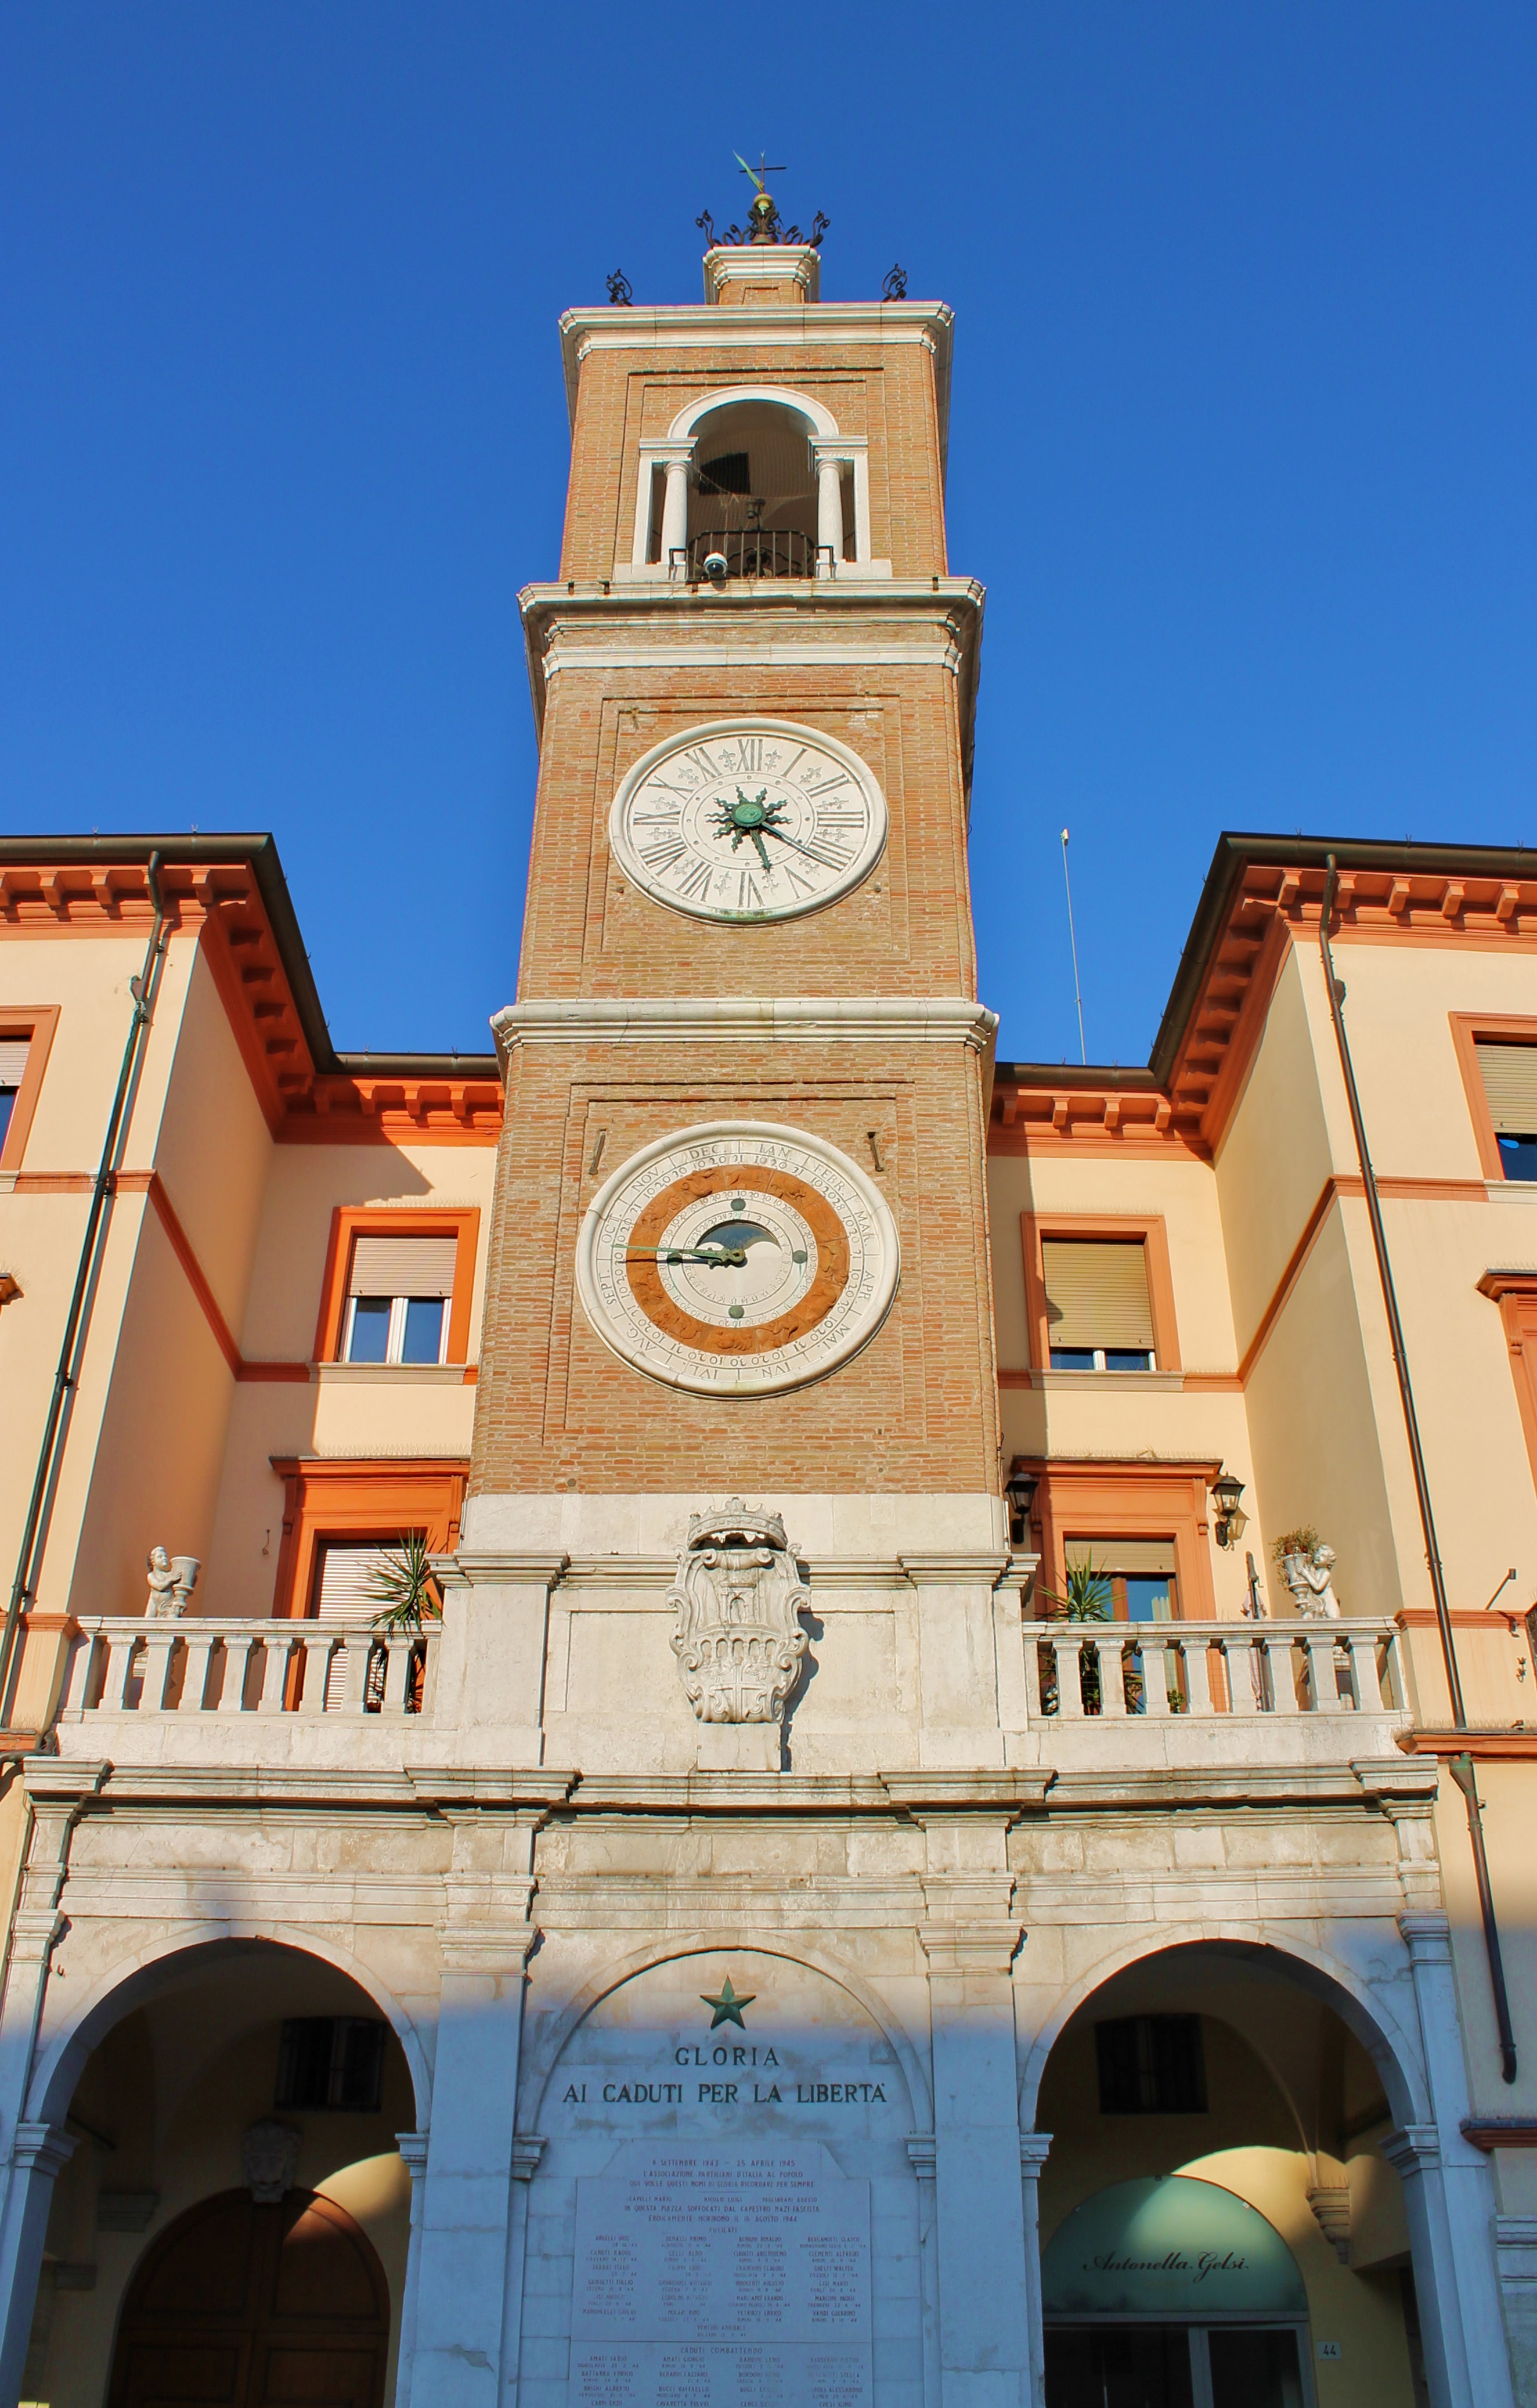 photo: https://upload.wikimedia.org/wikipedia/commons/8/8e/Torre_dell%27Orologio_di_Rimini.jpg